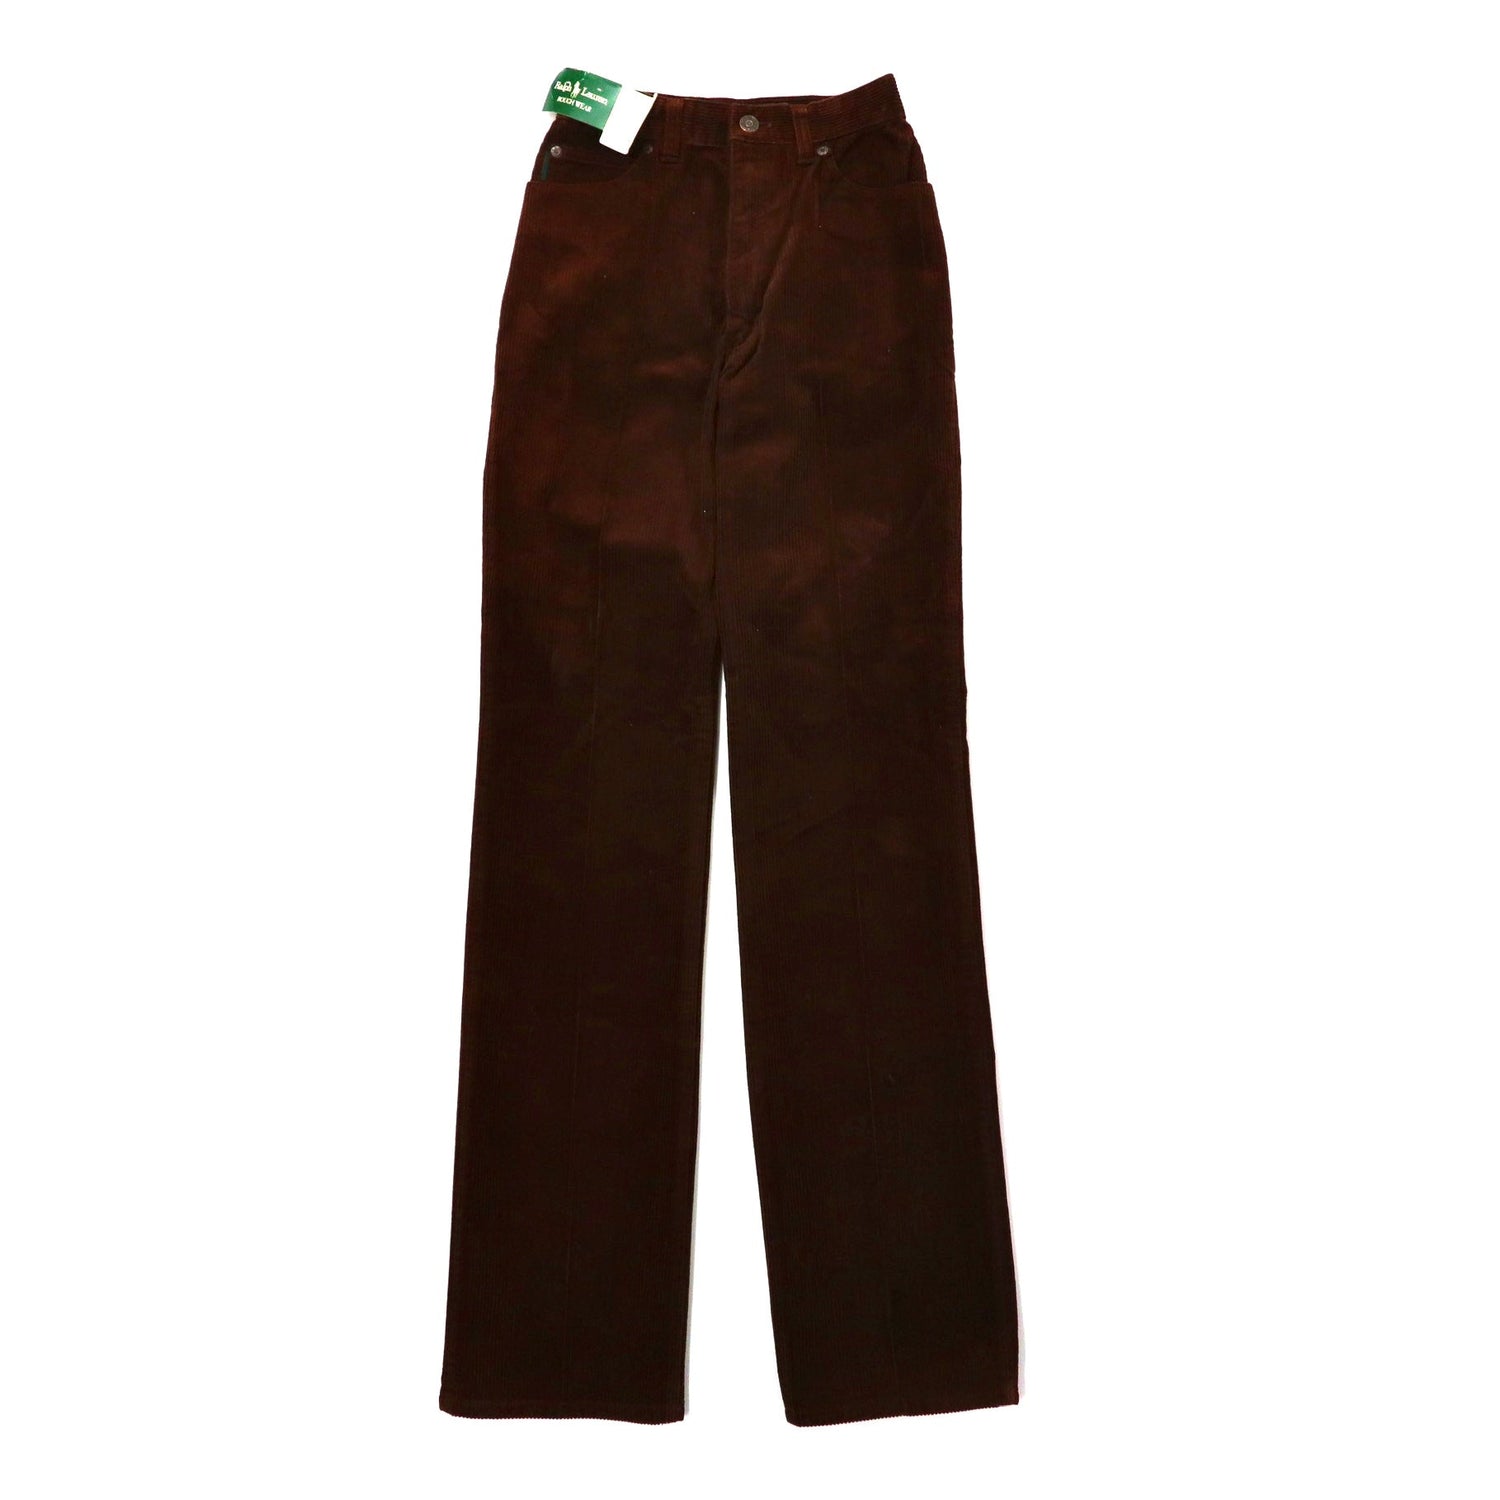 RALPH LAUREN Corduroy Pants 27 Brown Cotton Leather Patch ROUGH 